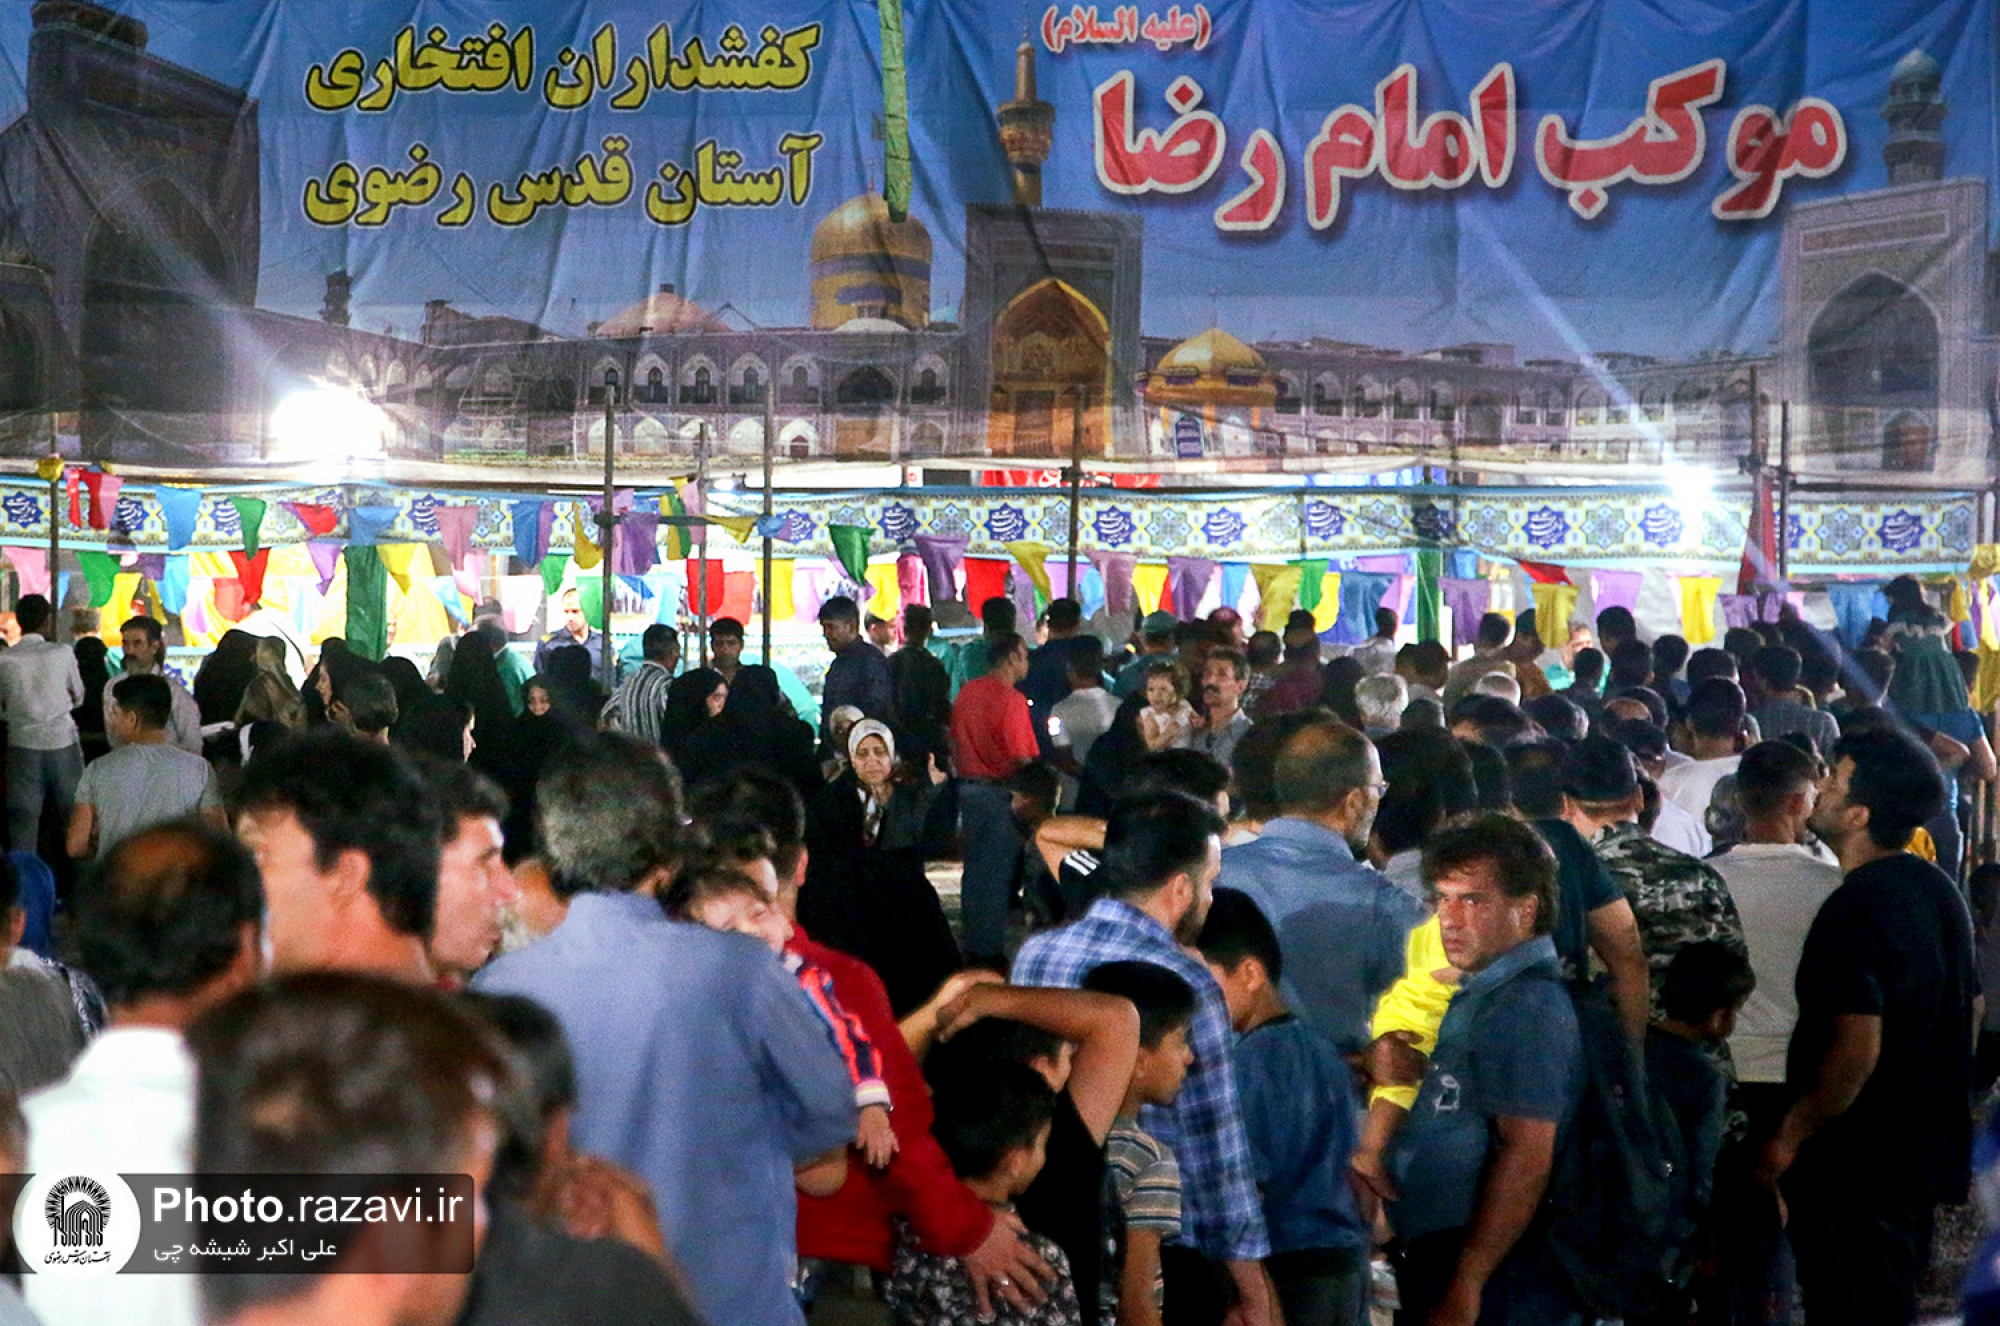 موکب کفشداران افتخاری حرم مطهر رضوی در شب عید غدیر